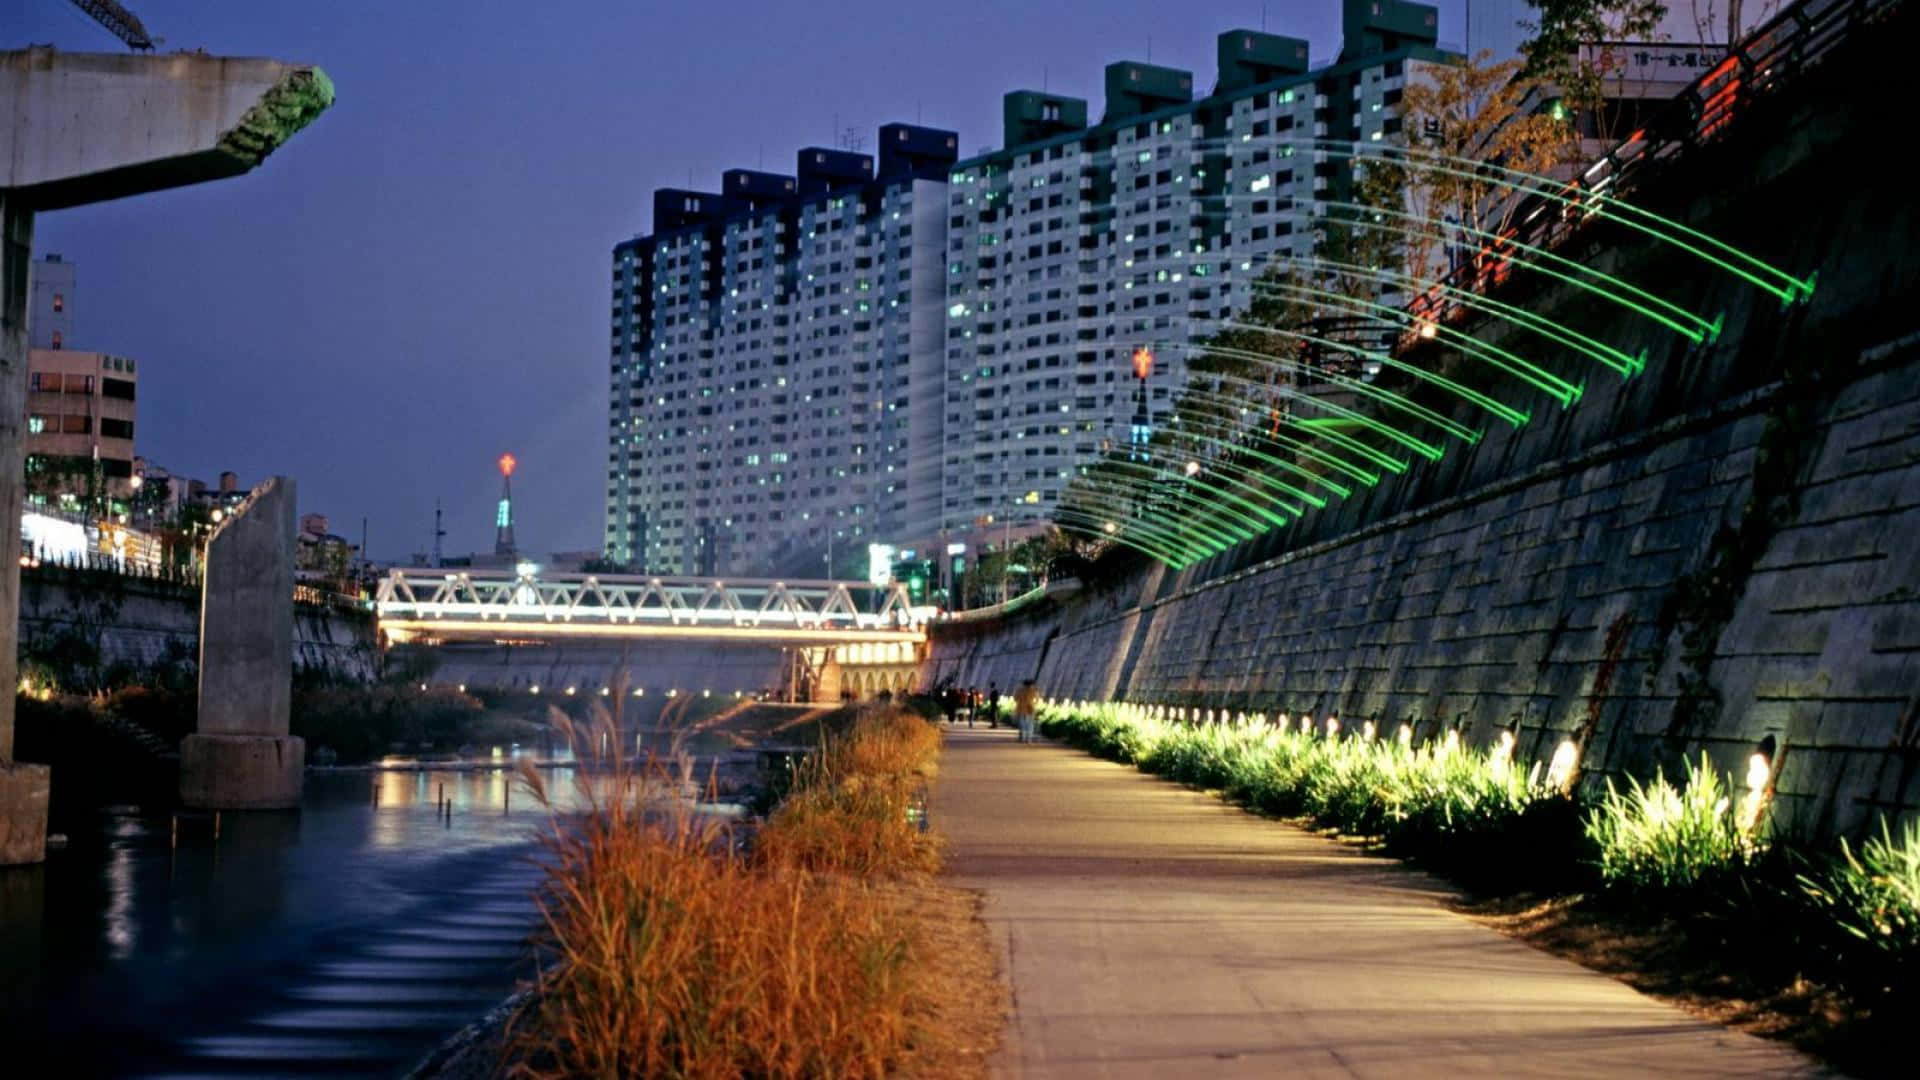 Impresionantepanorama Urbano De Corea Del Sur.